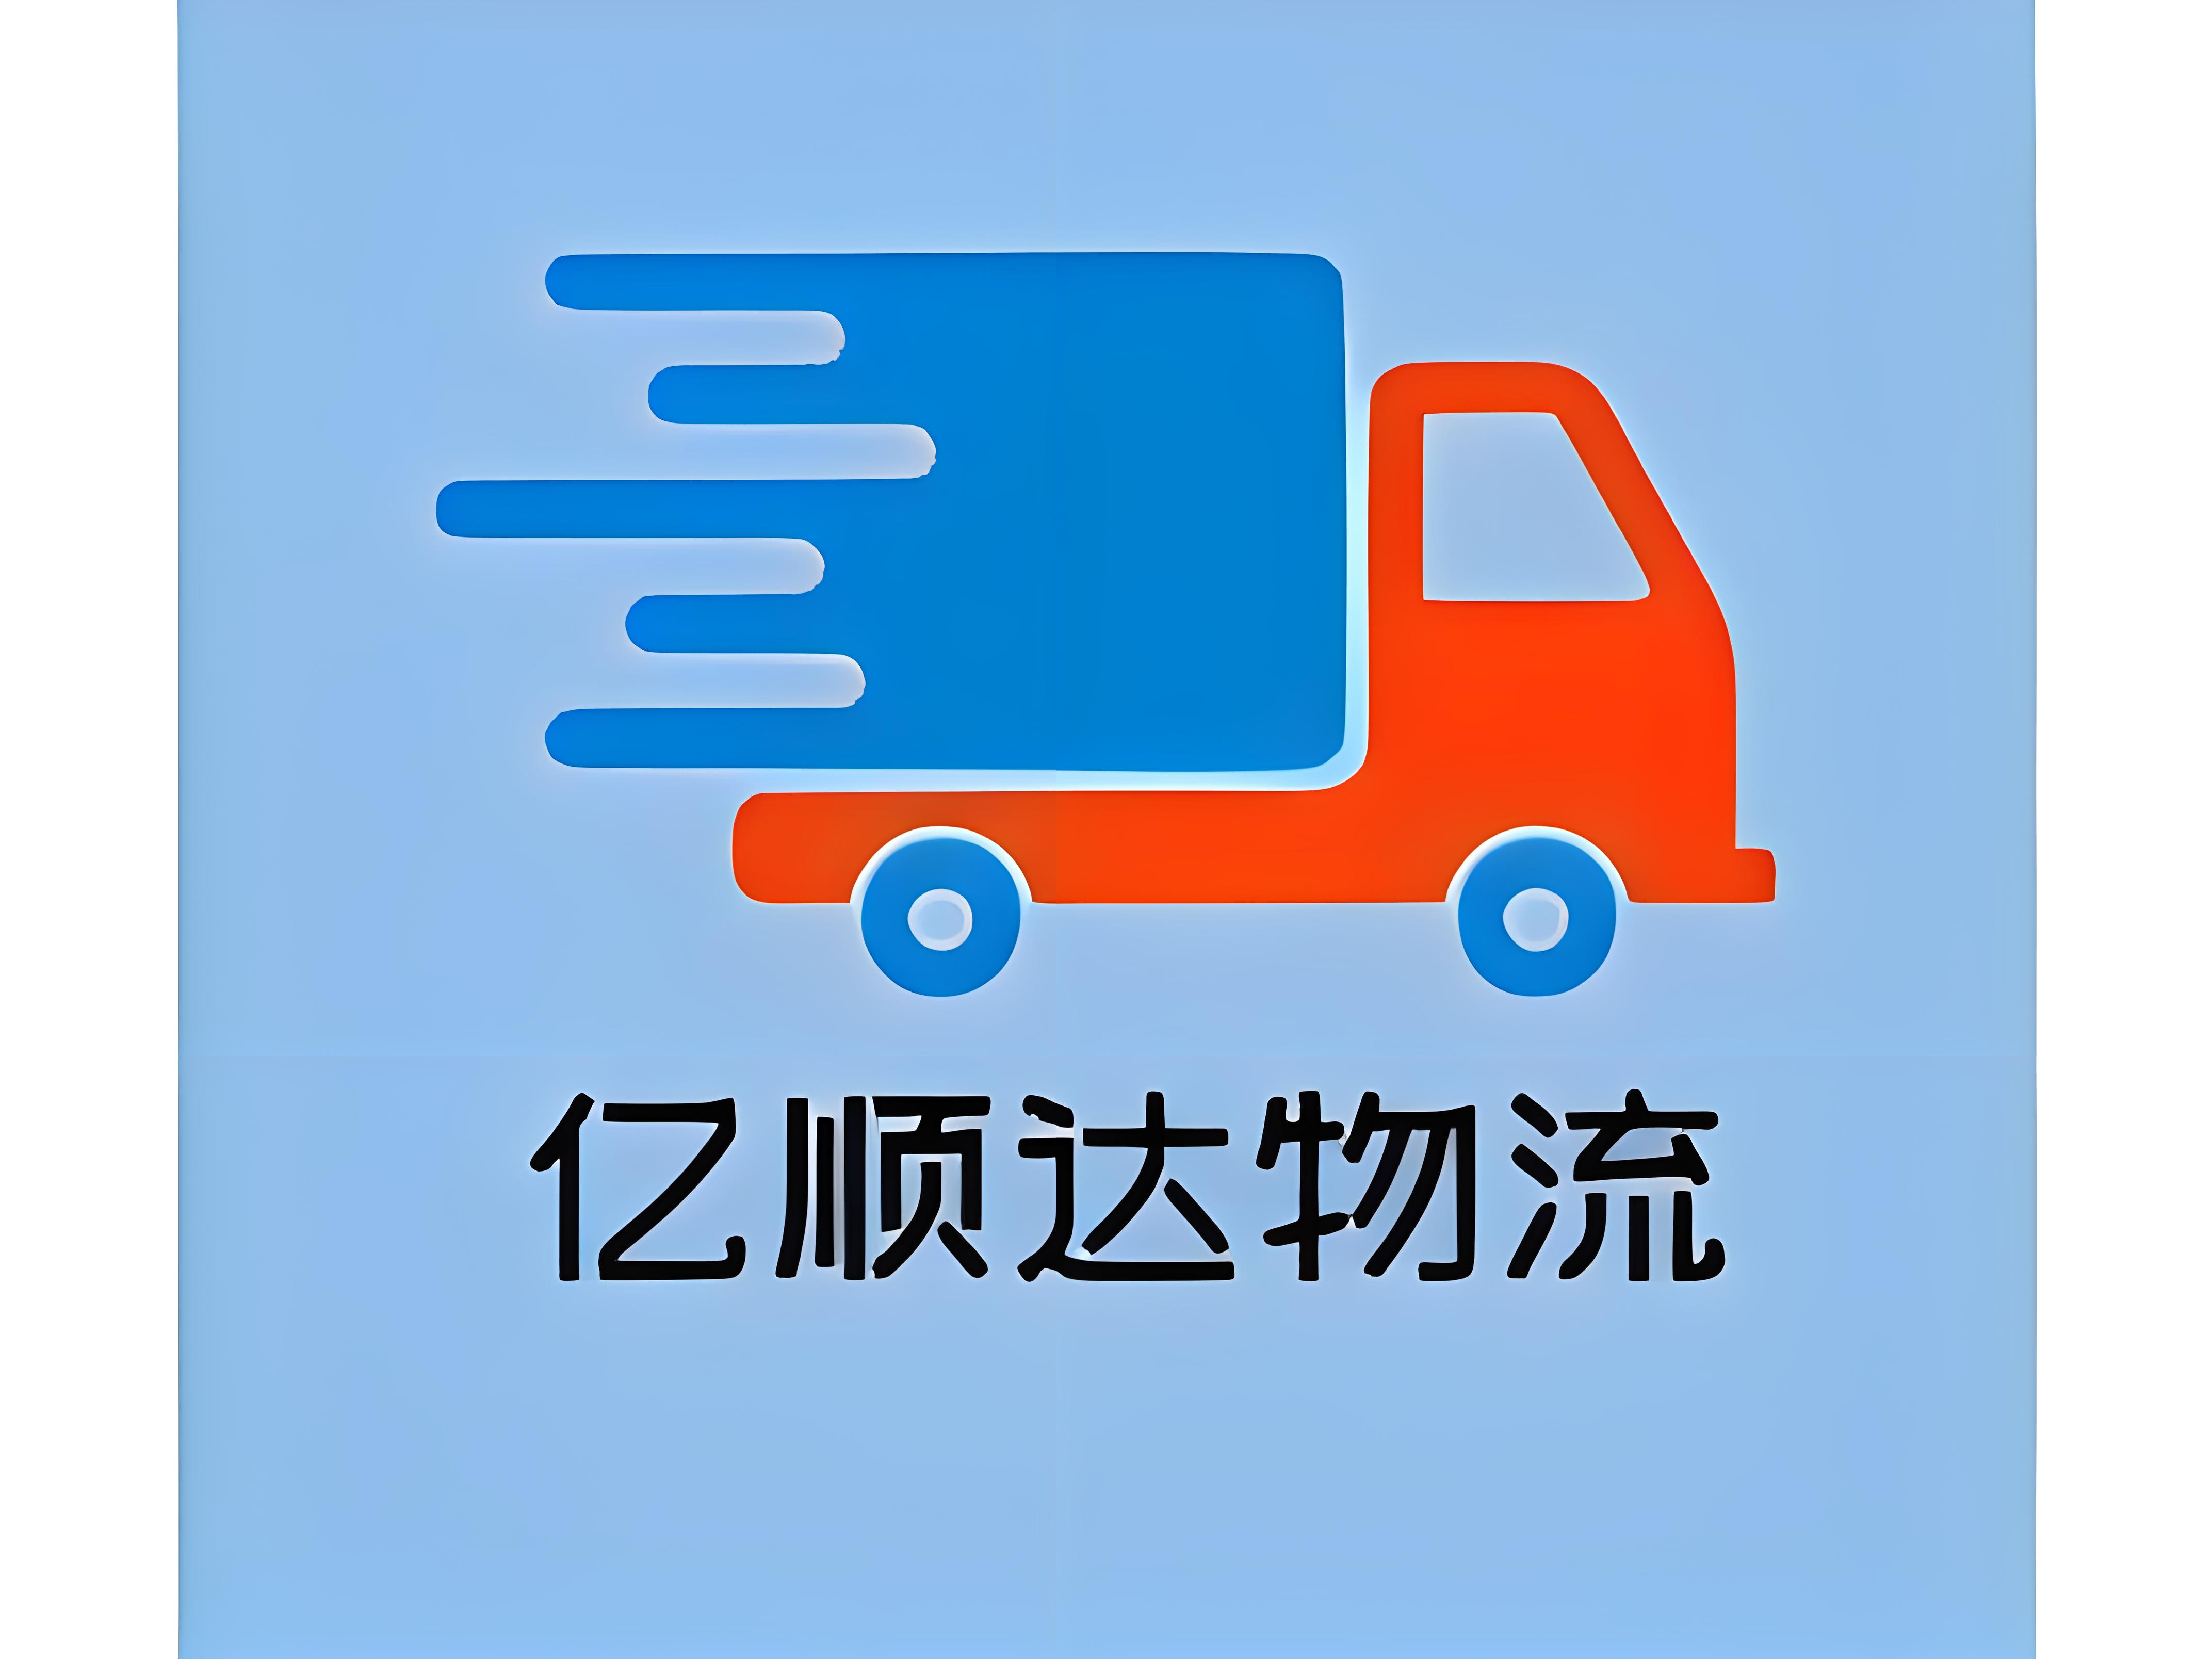 曹妃甸迅驰货运物流车队 - 货运专线与大件运输专家  - 顶级货运代理服务